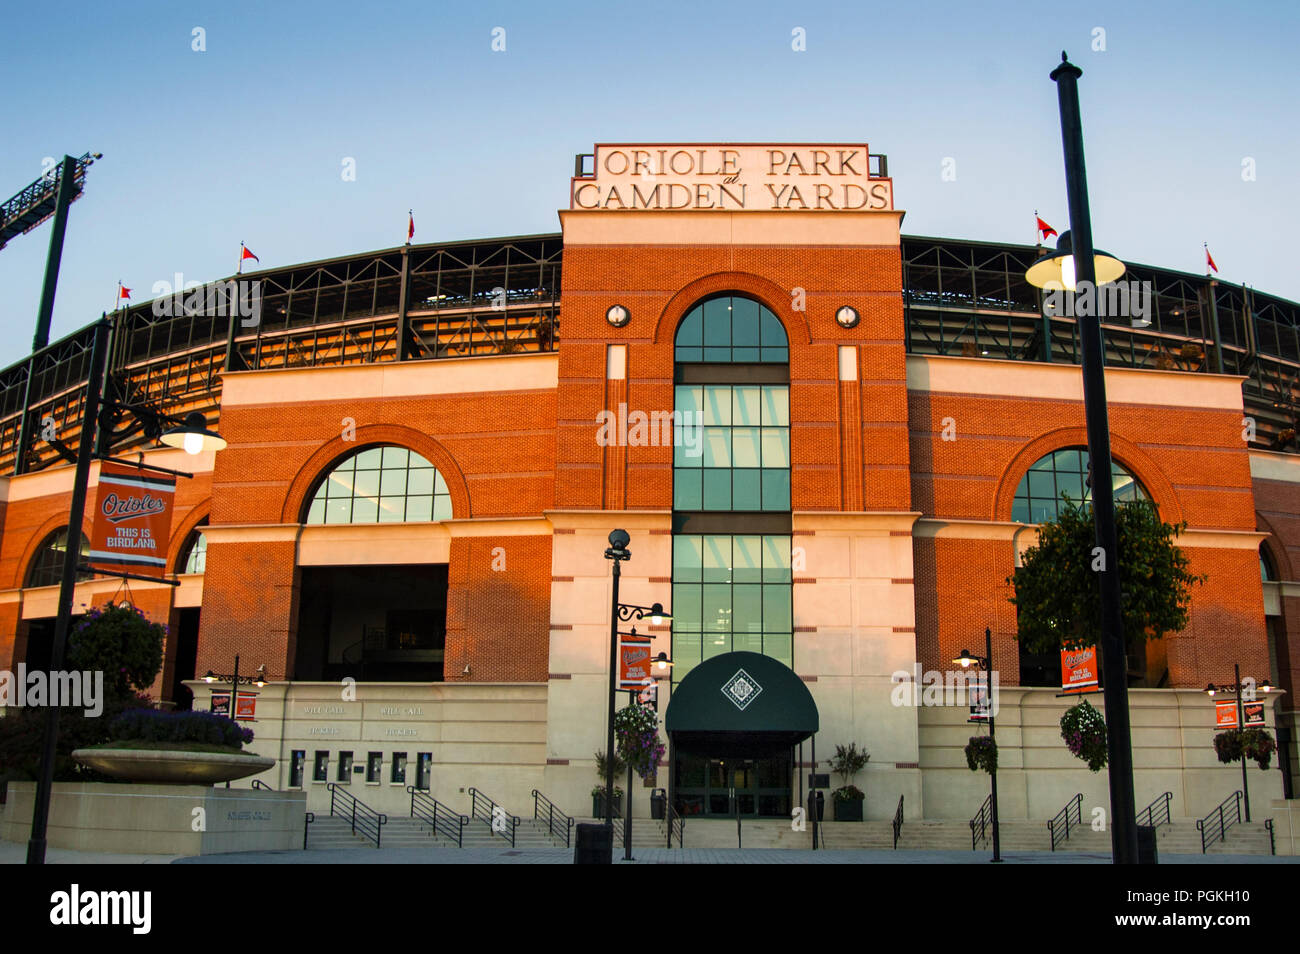 Oriole Park at Camden Yard front facade of the retro-style ballpark design, Baltimore, Maryland. Stock Photo